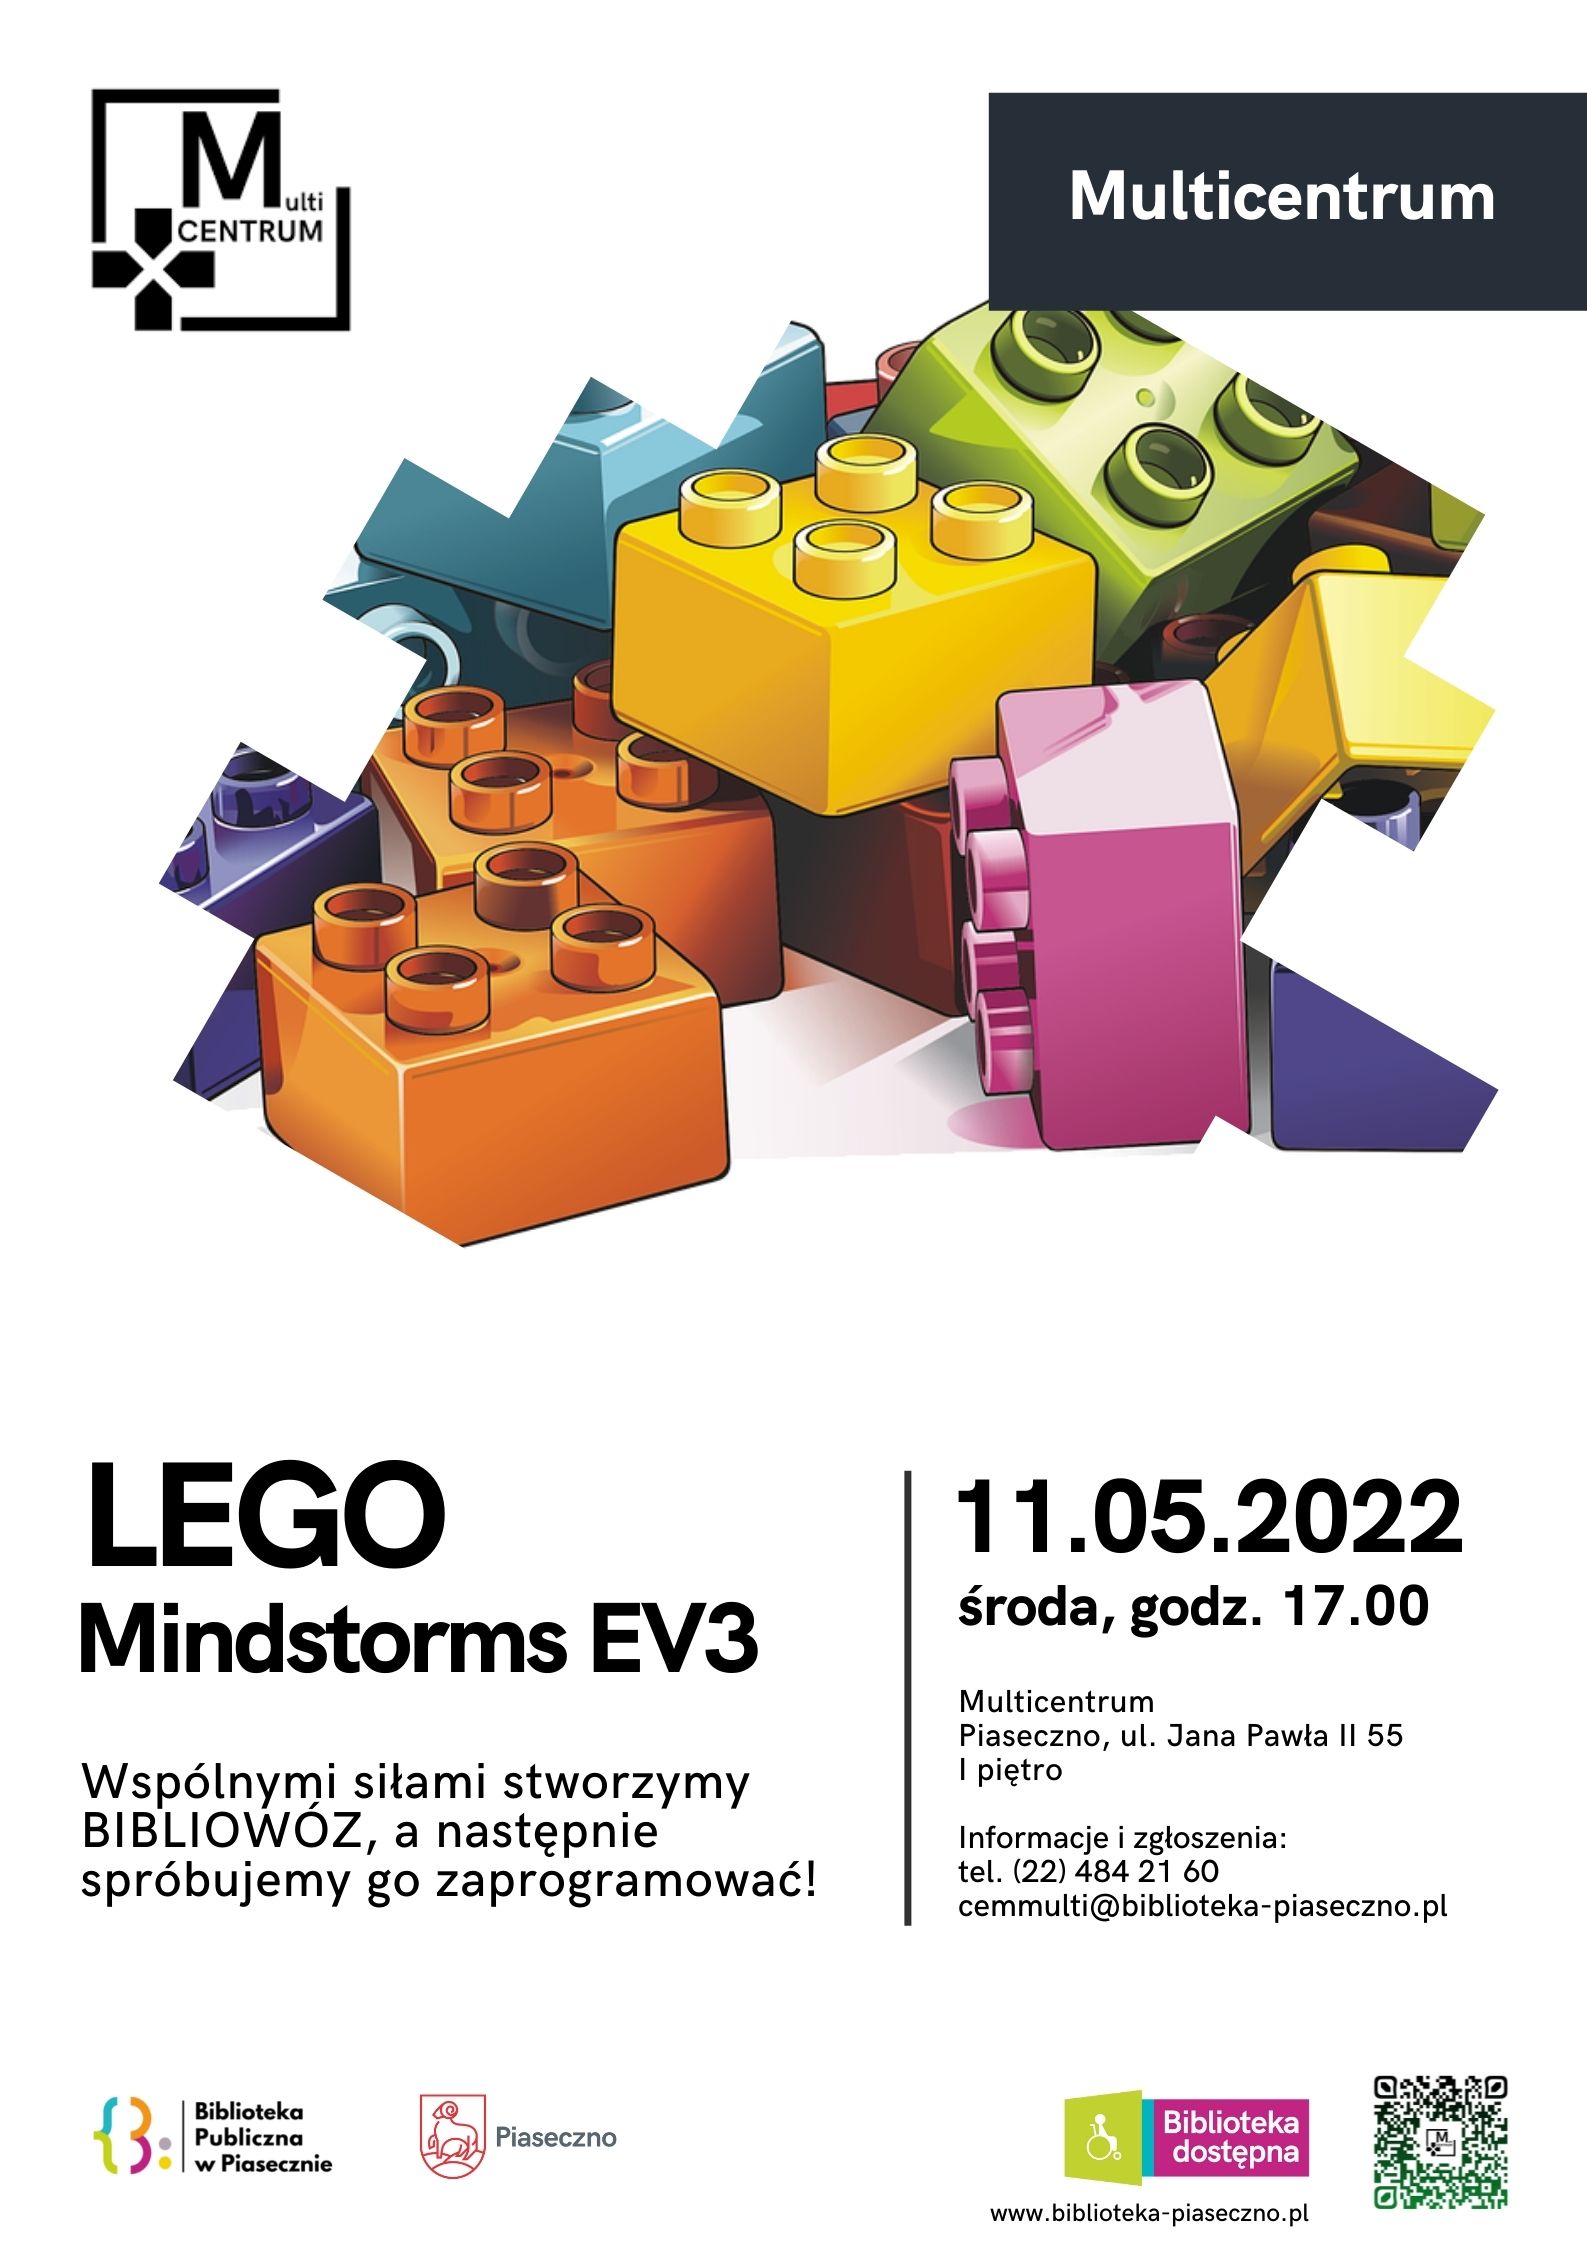 Lego Mindstorms EV3 – BIBLIOWÓZ